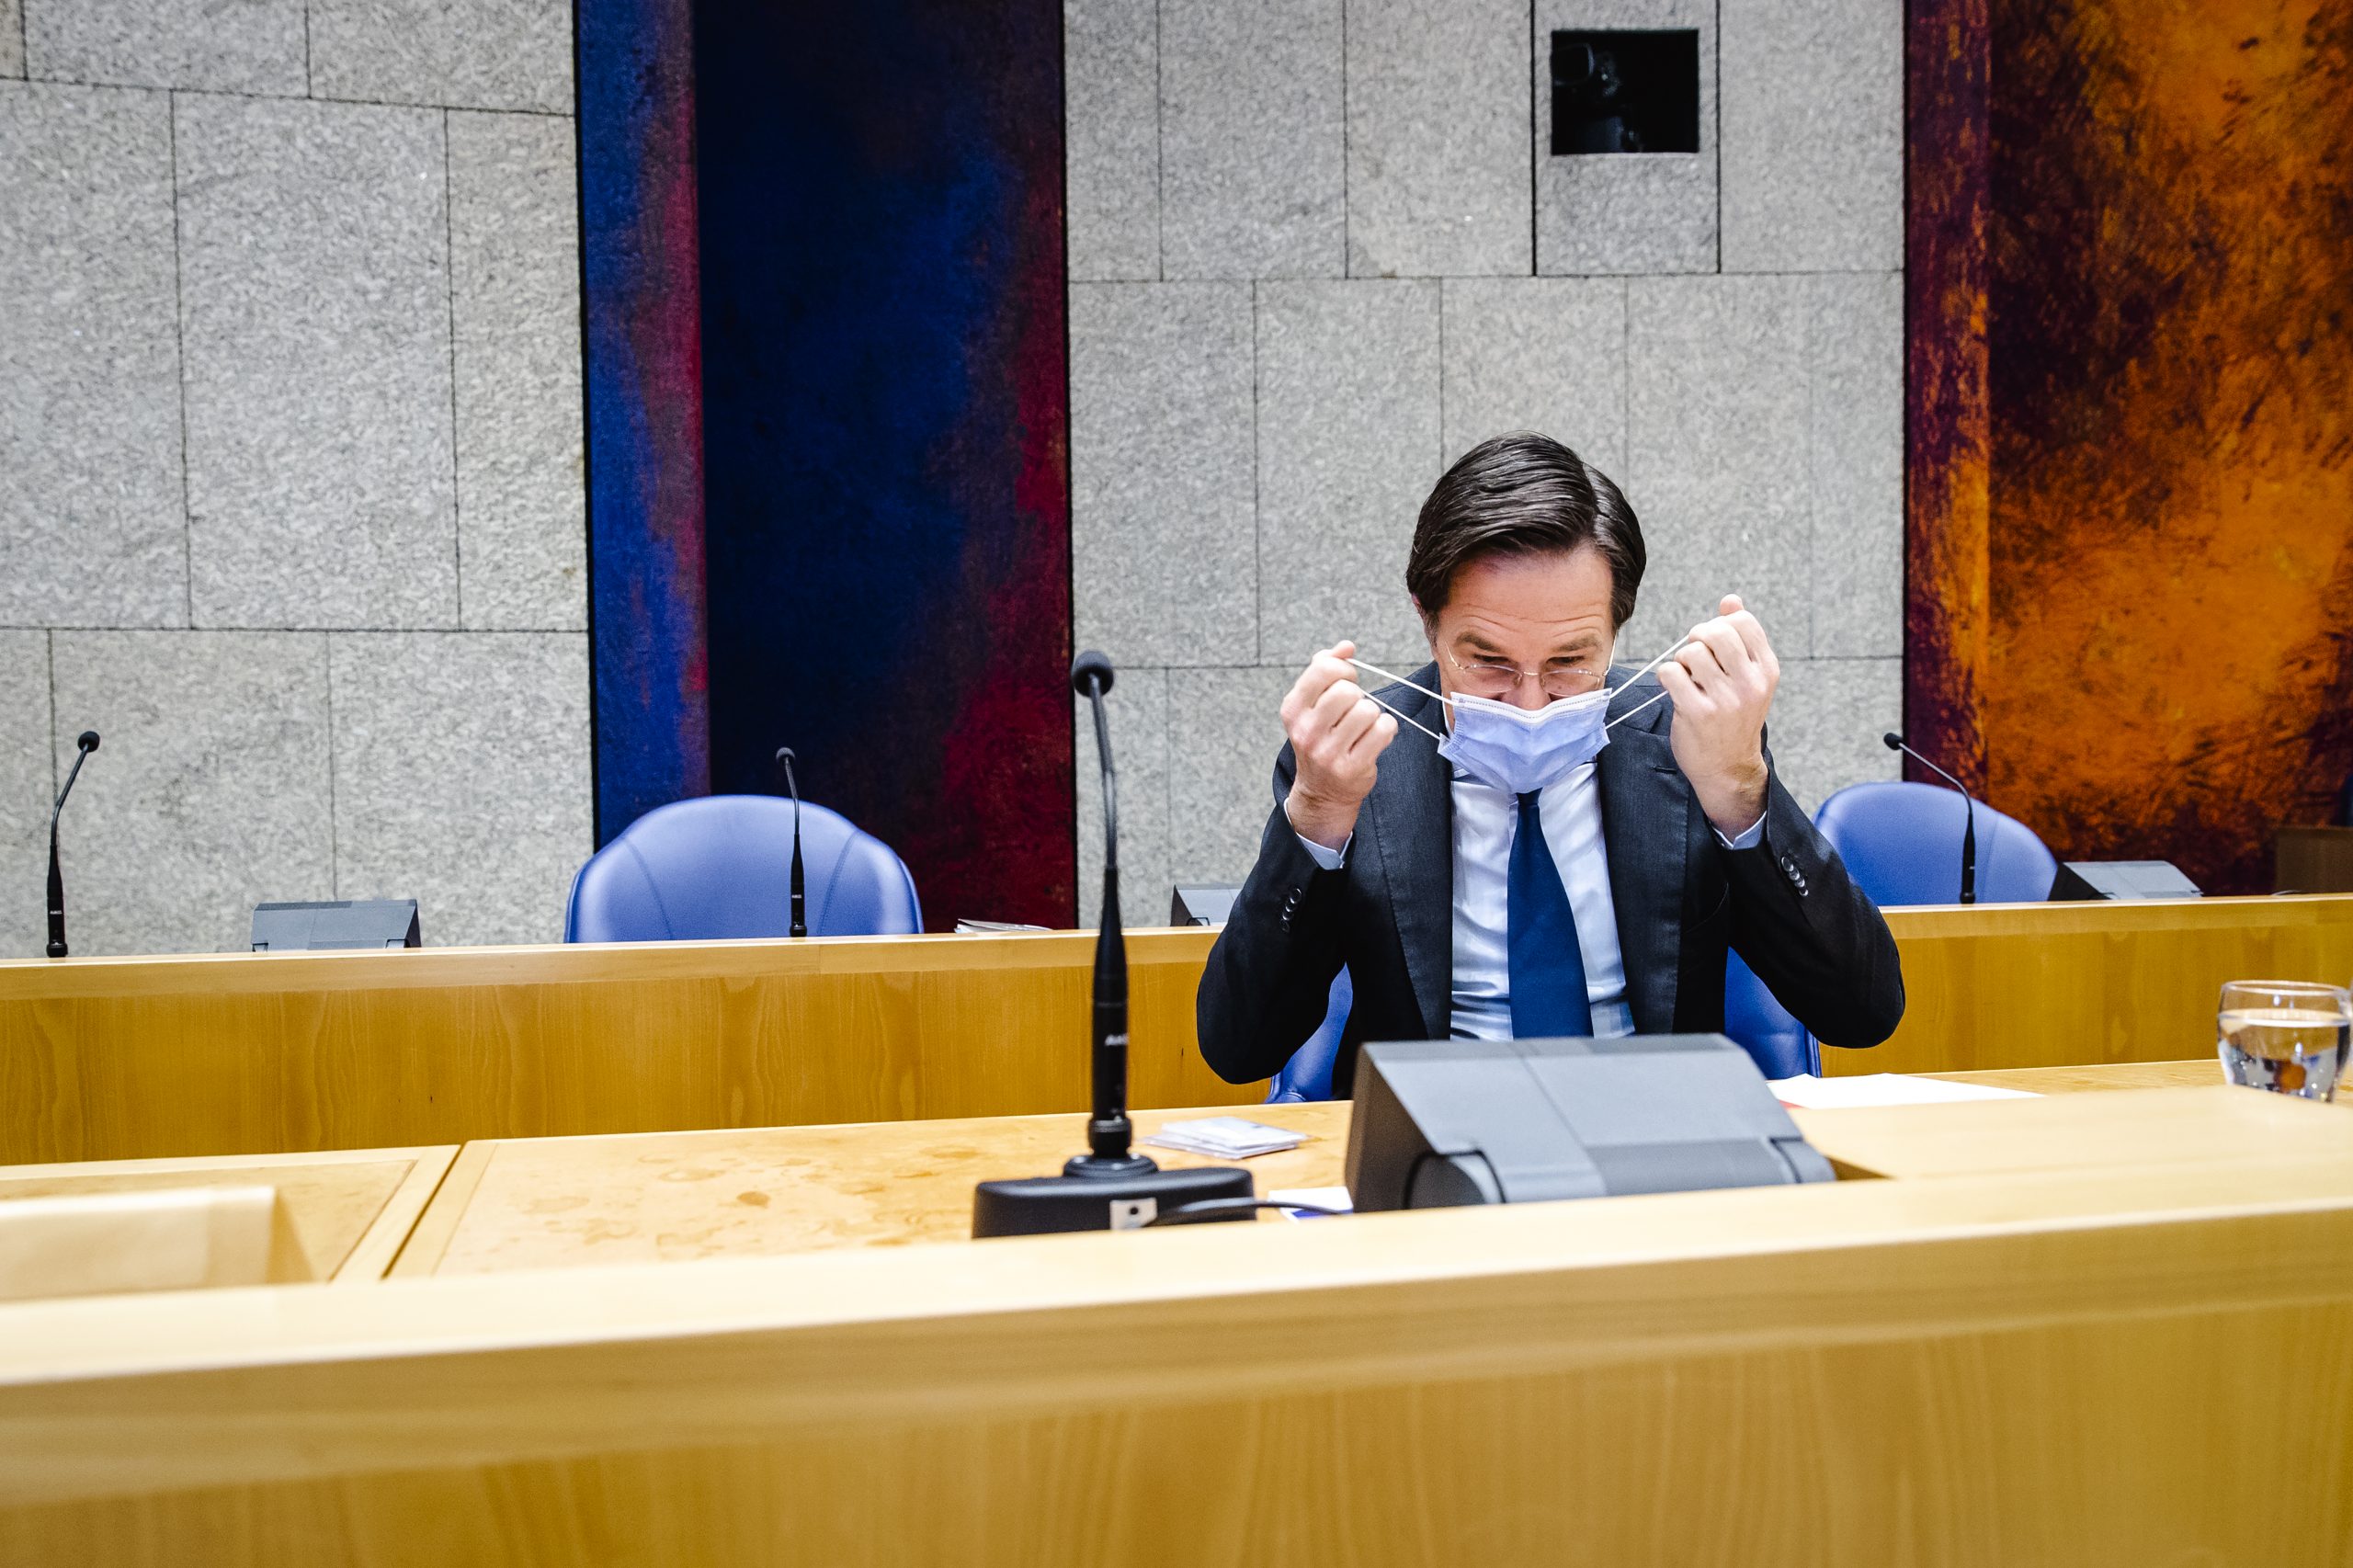 Demissionair premier Mark Rutte tijdens het Kamerdebat over de spoedwet voor de avondklok.